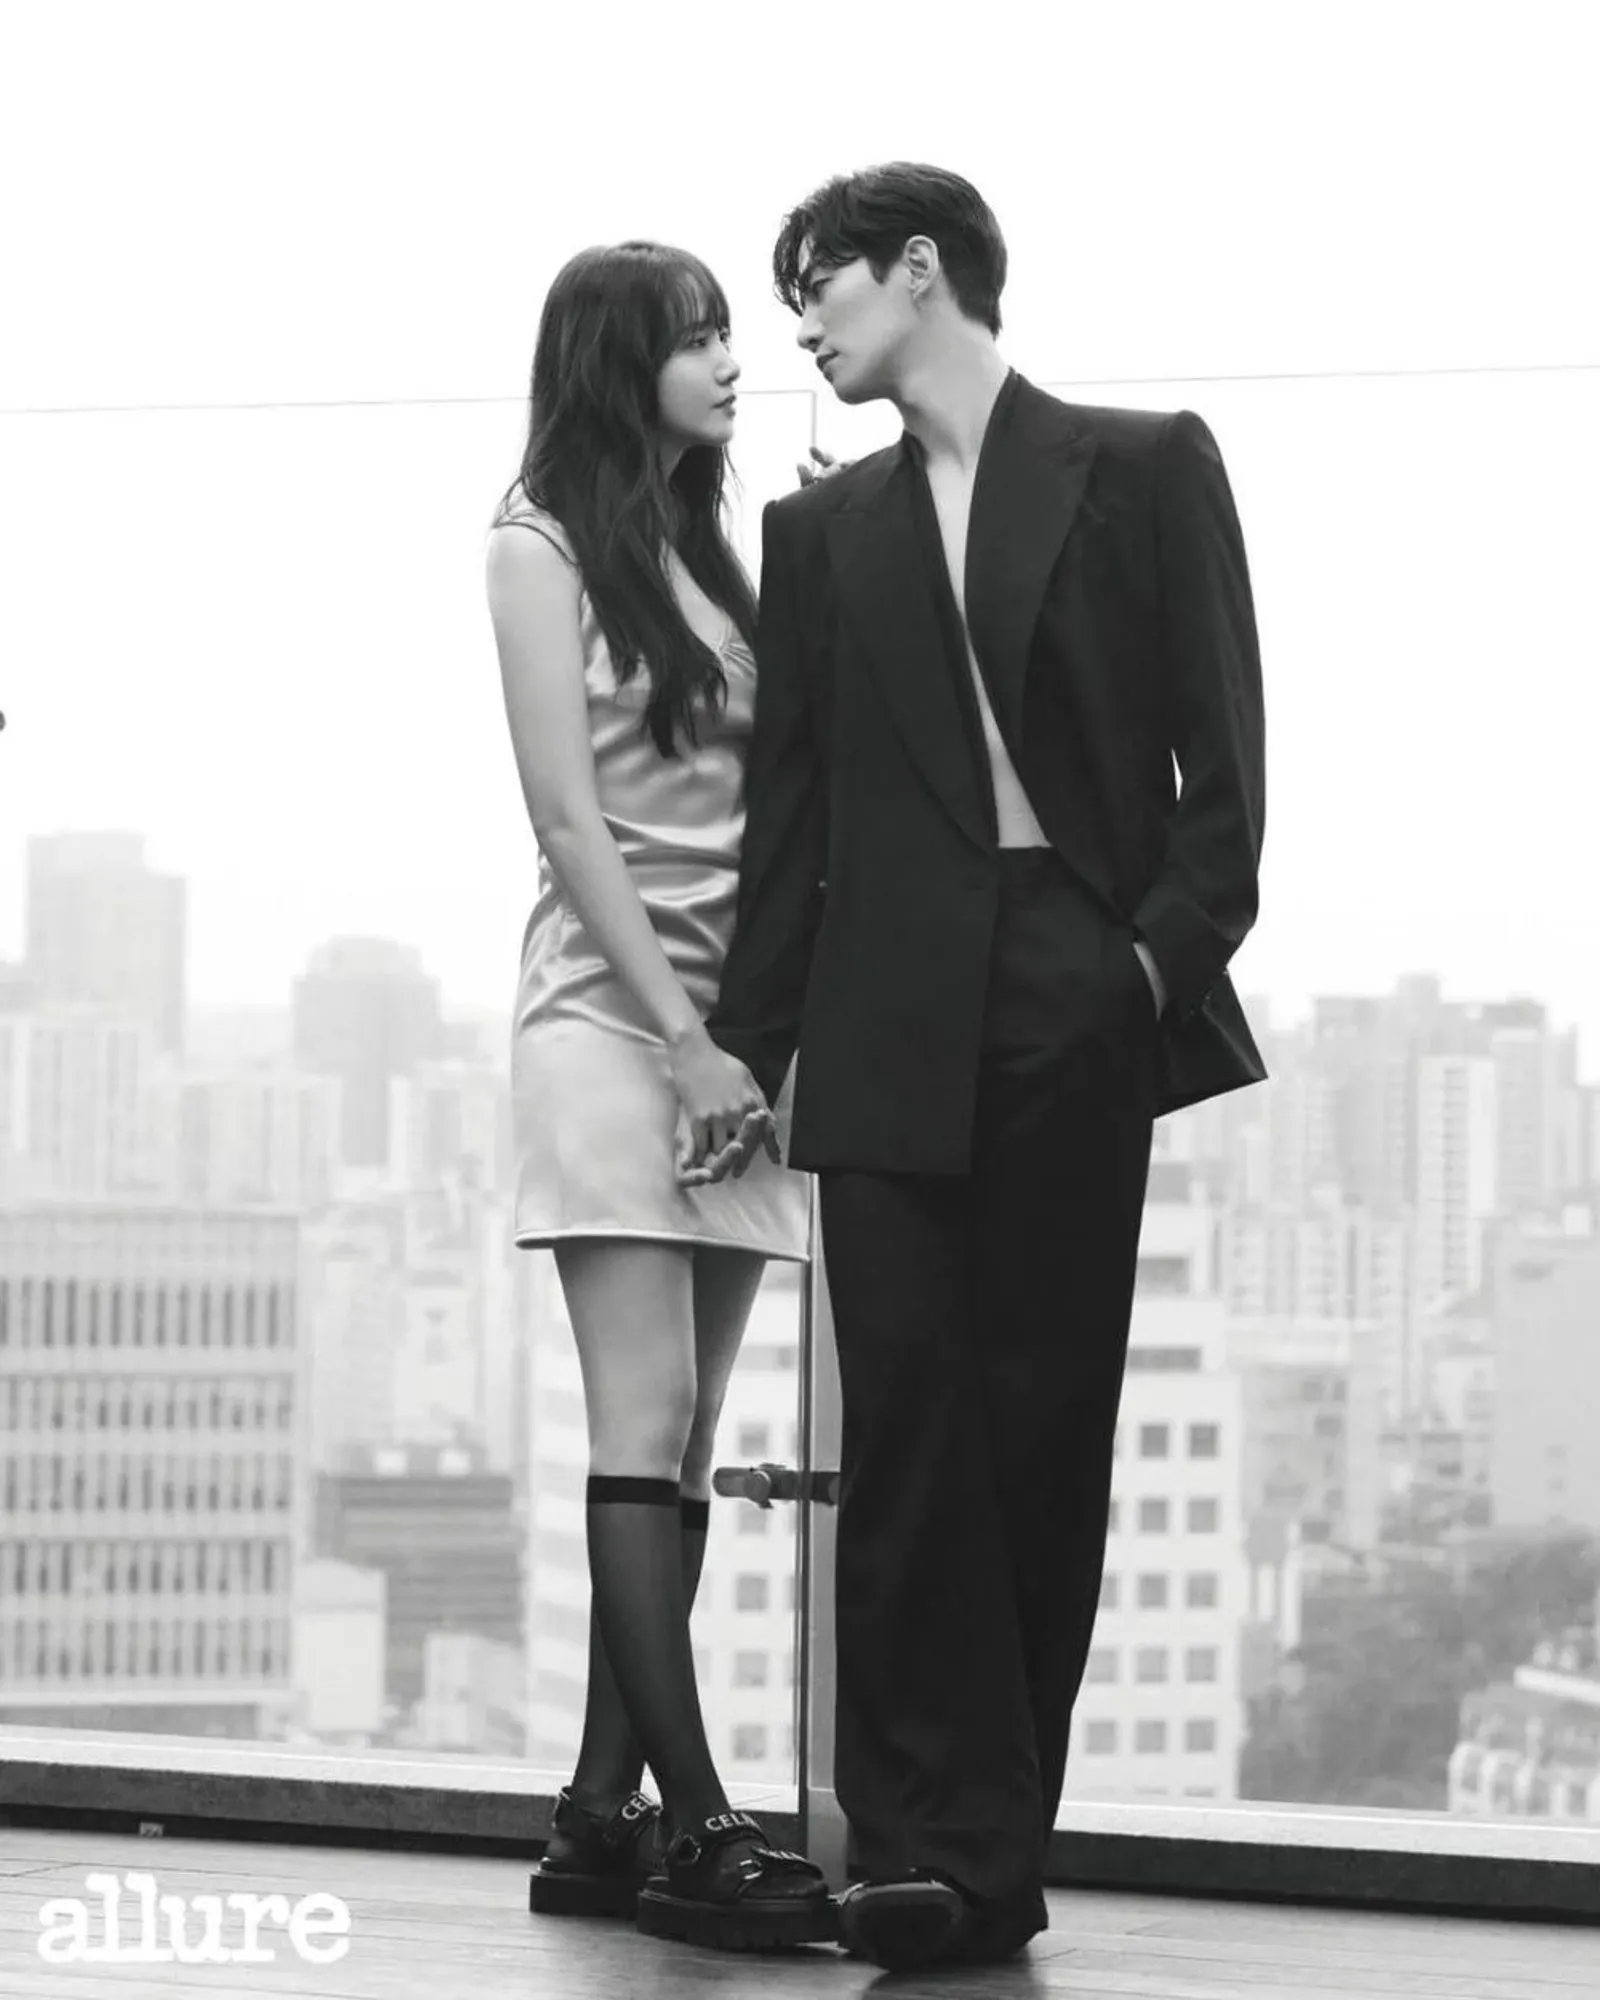 Sahabat Jadi 'Kekasih', Intip 8 Potret Mesra Lee Jun Ho dan Im Yoona